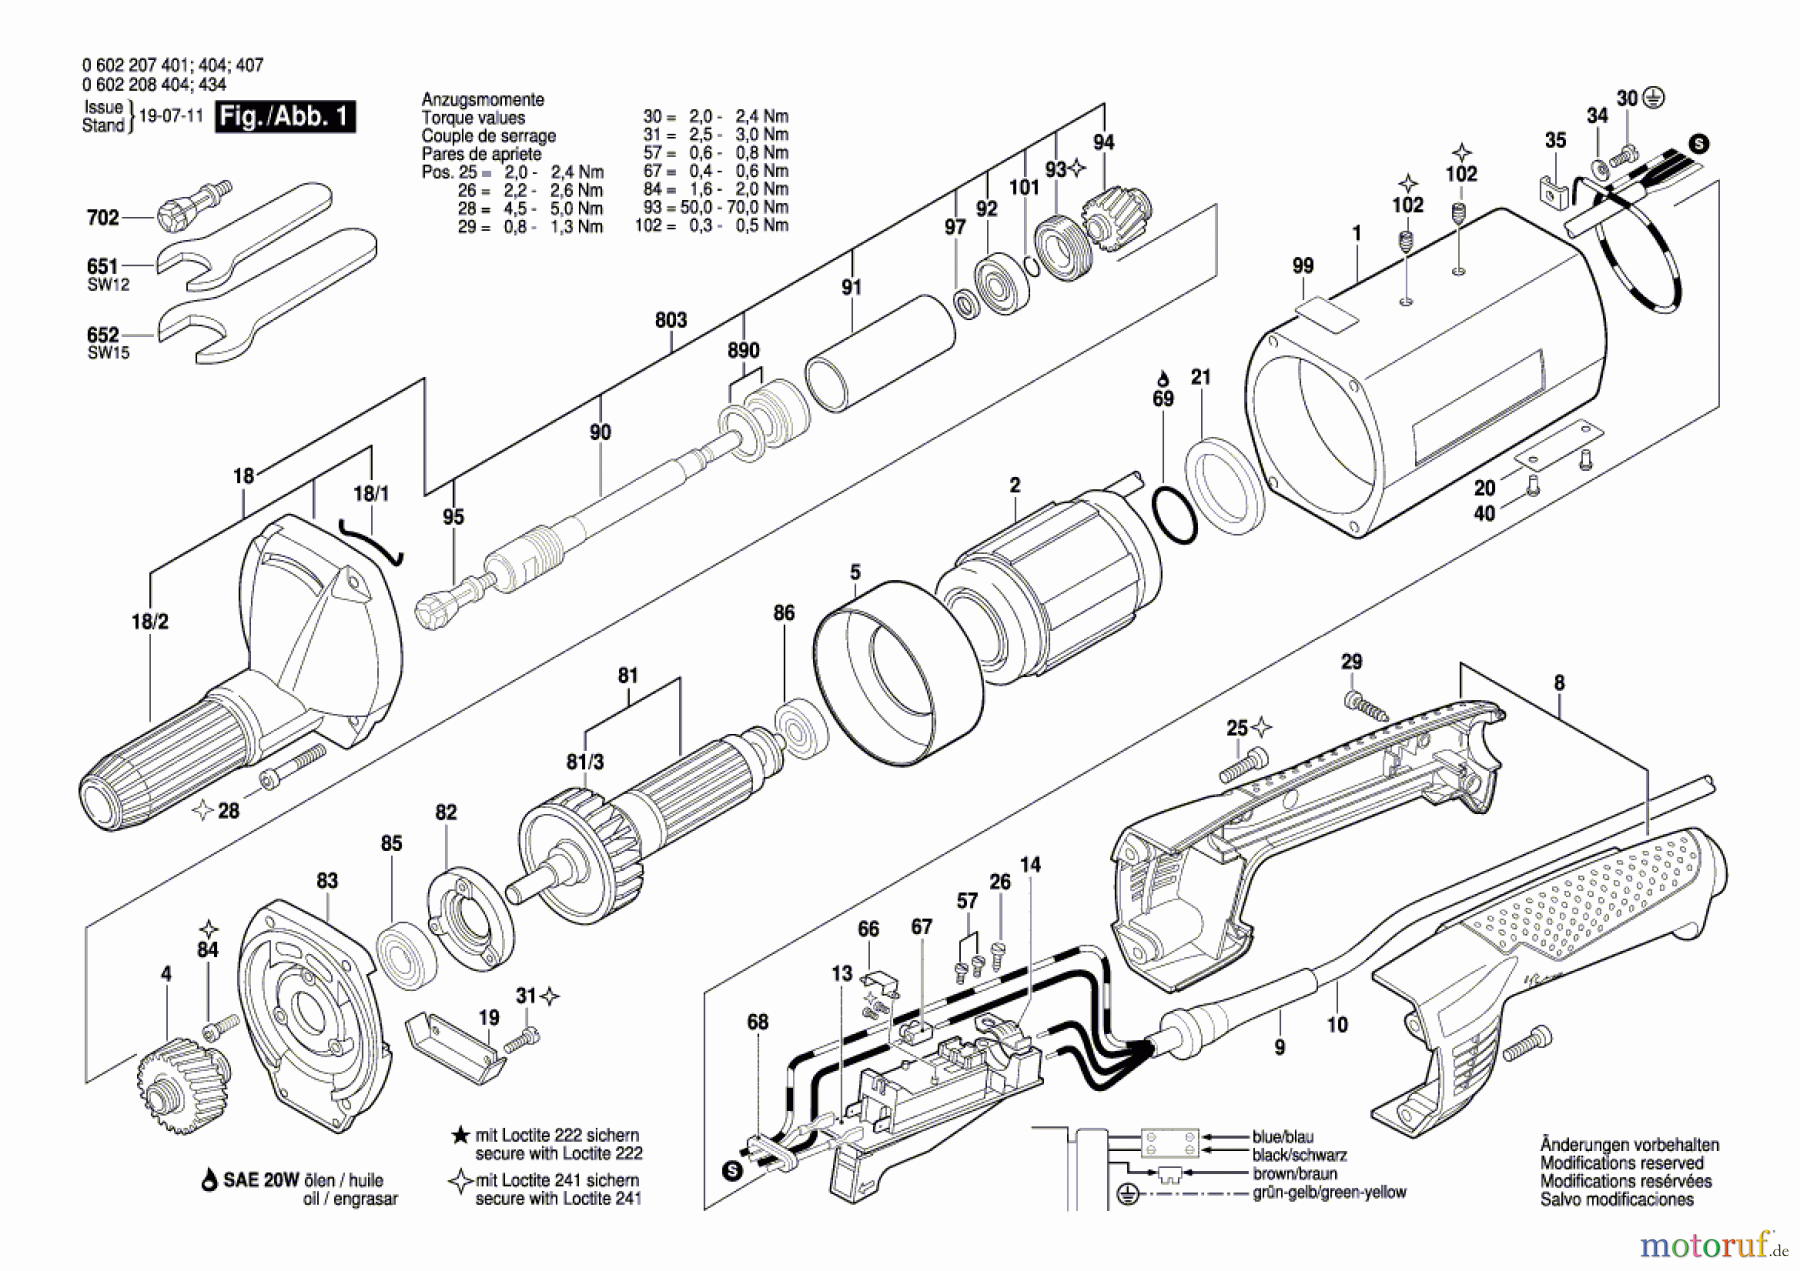  Bosch Werkzeug Geradschleifer HGS 65/32 Seite 1